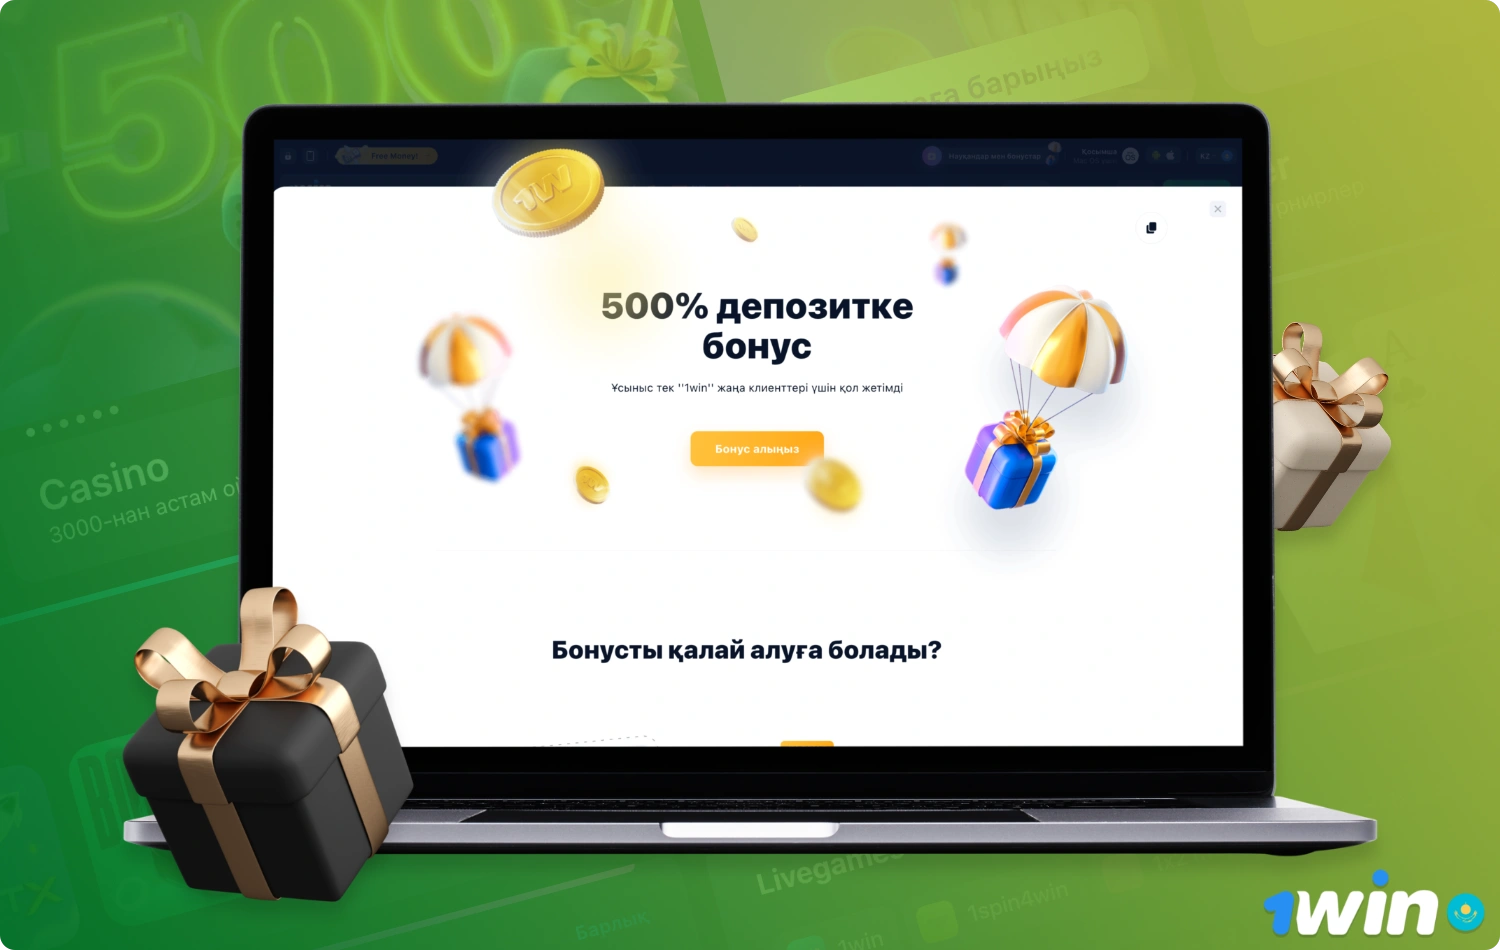 Новые пользователи 1win в Казахстане могут получить щедрый приветственный бонус